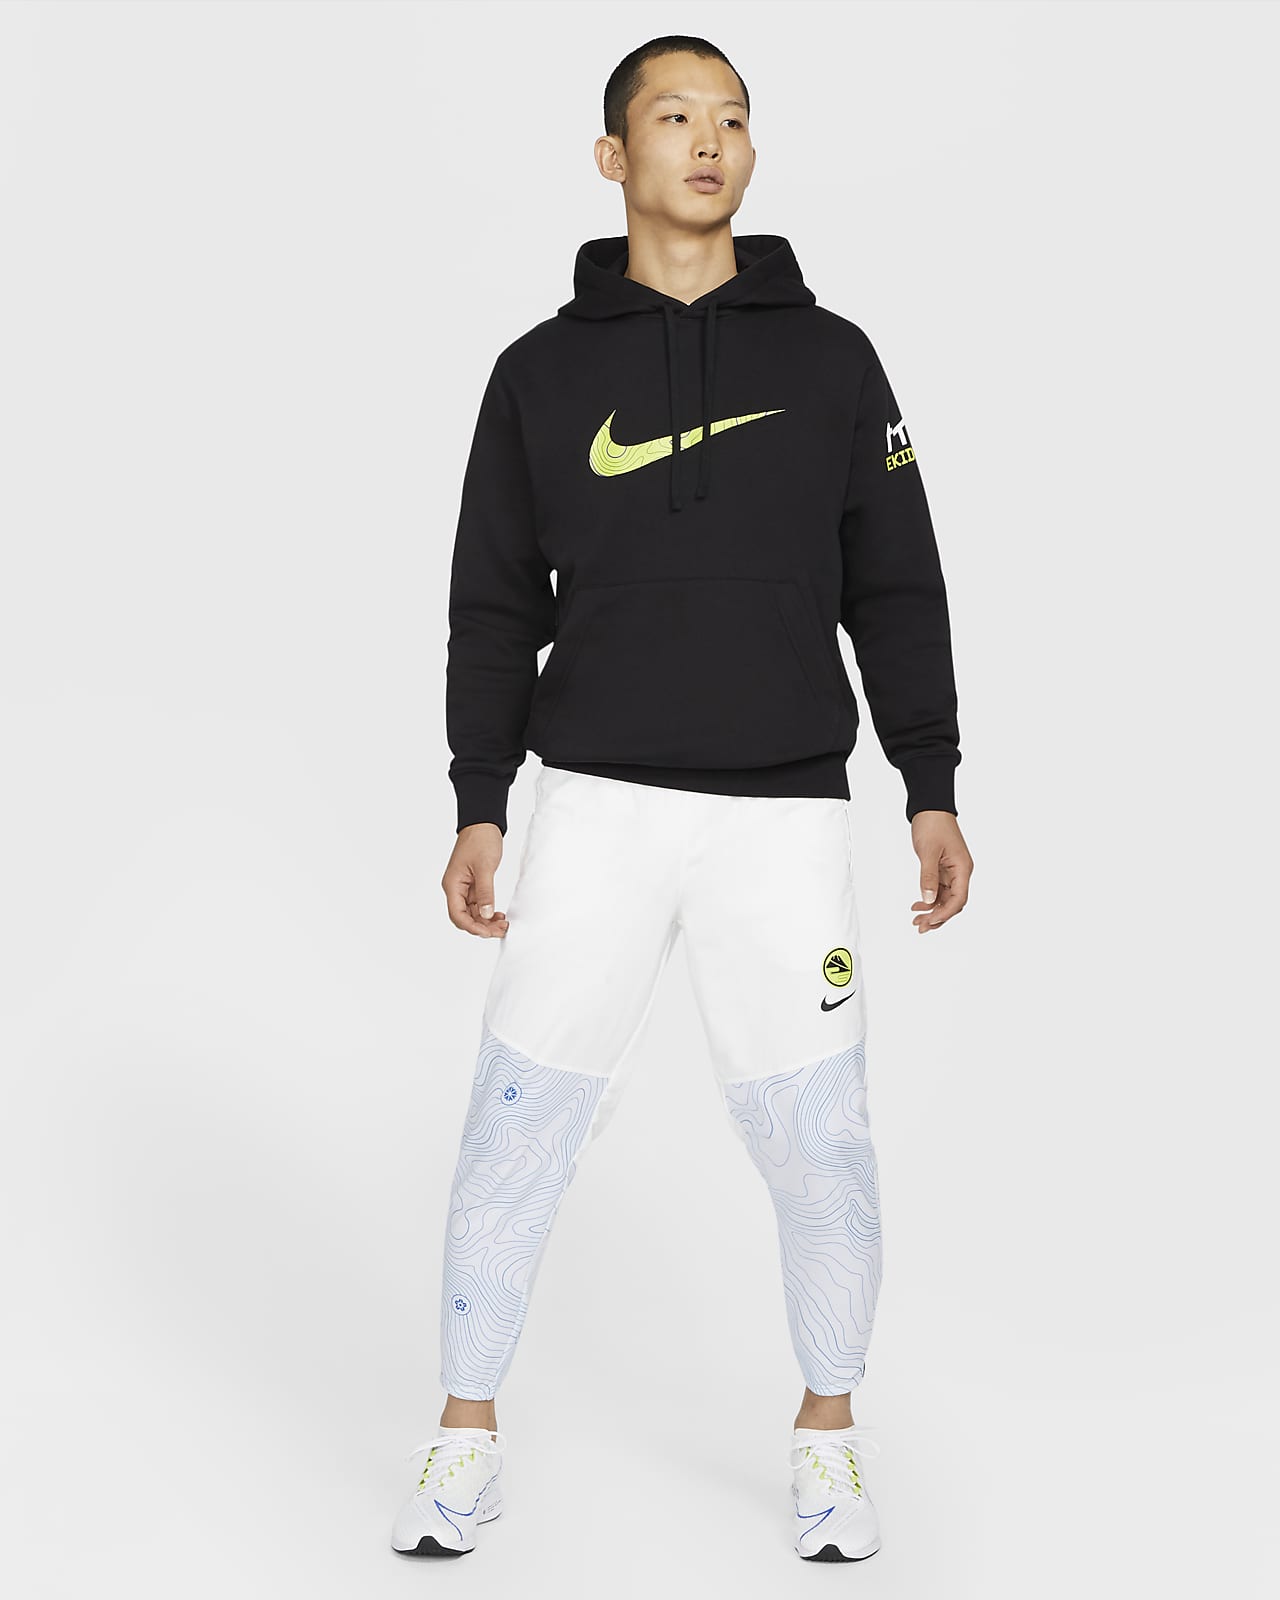 Nike公式 ナイキ サーマ エッセンシャル メンズ ランニングパンツ オンラインストア 通販サイト